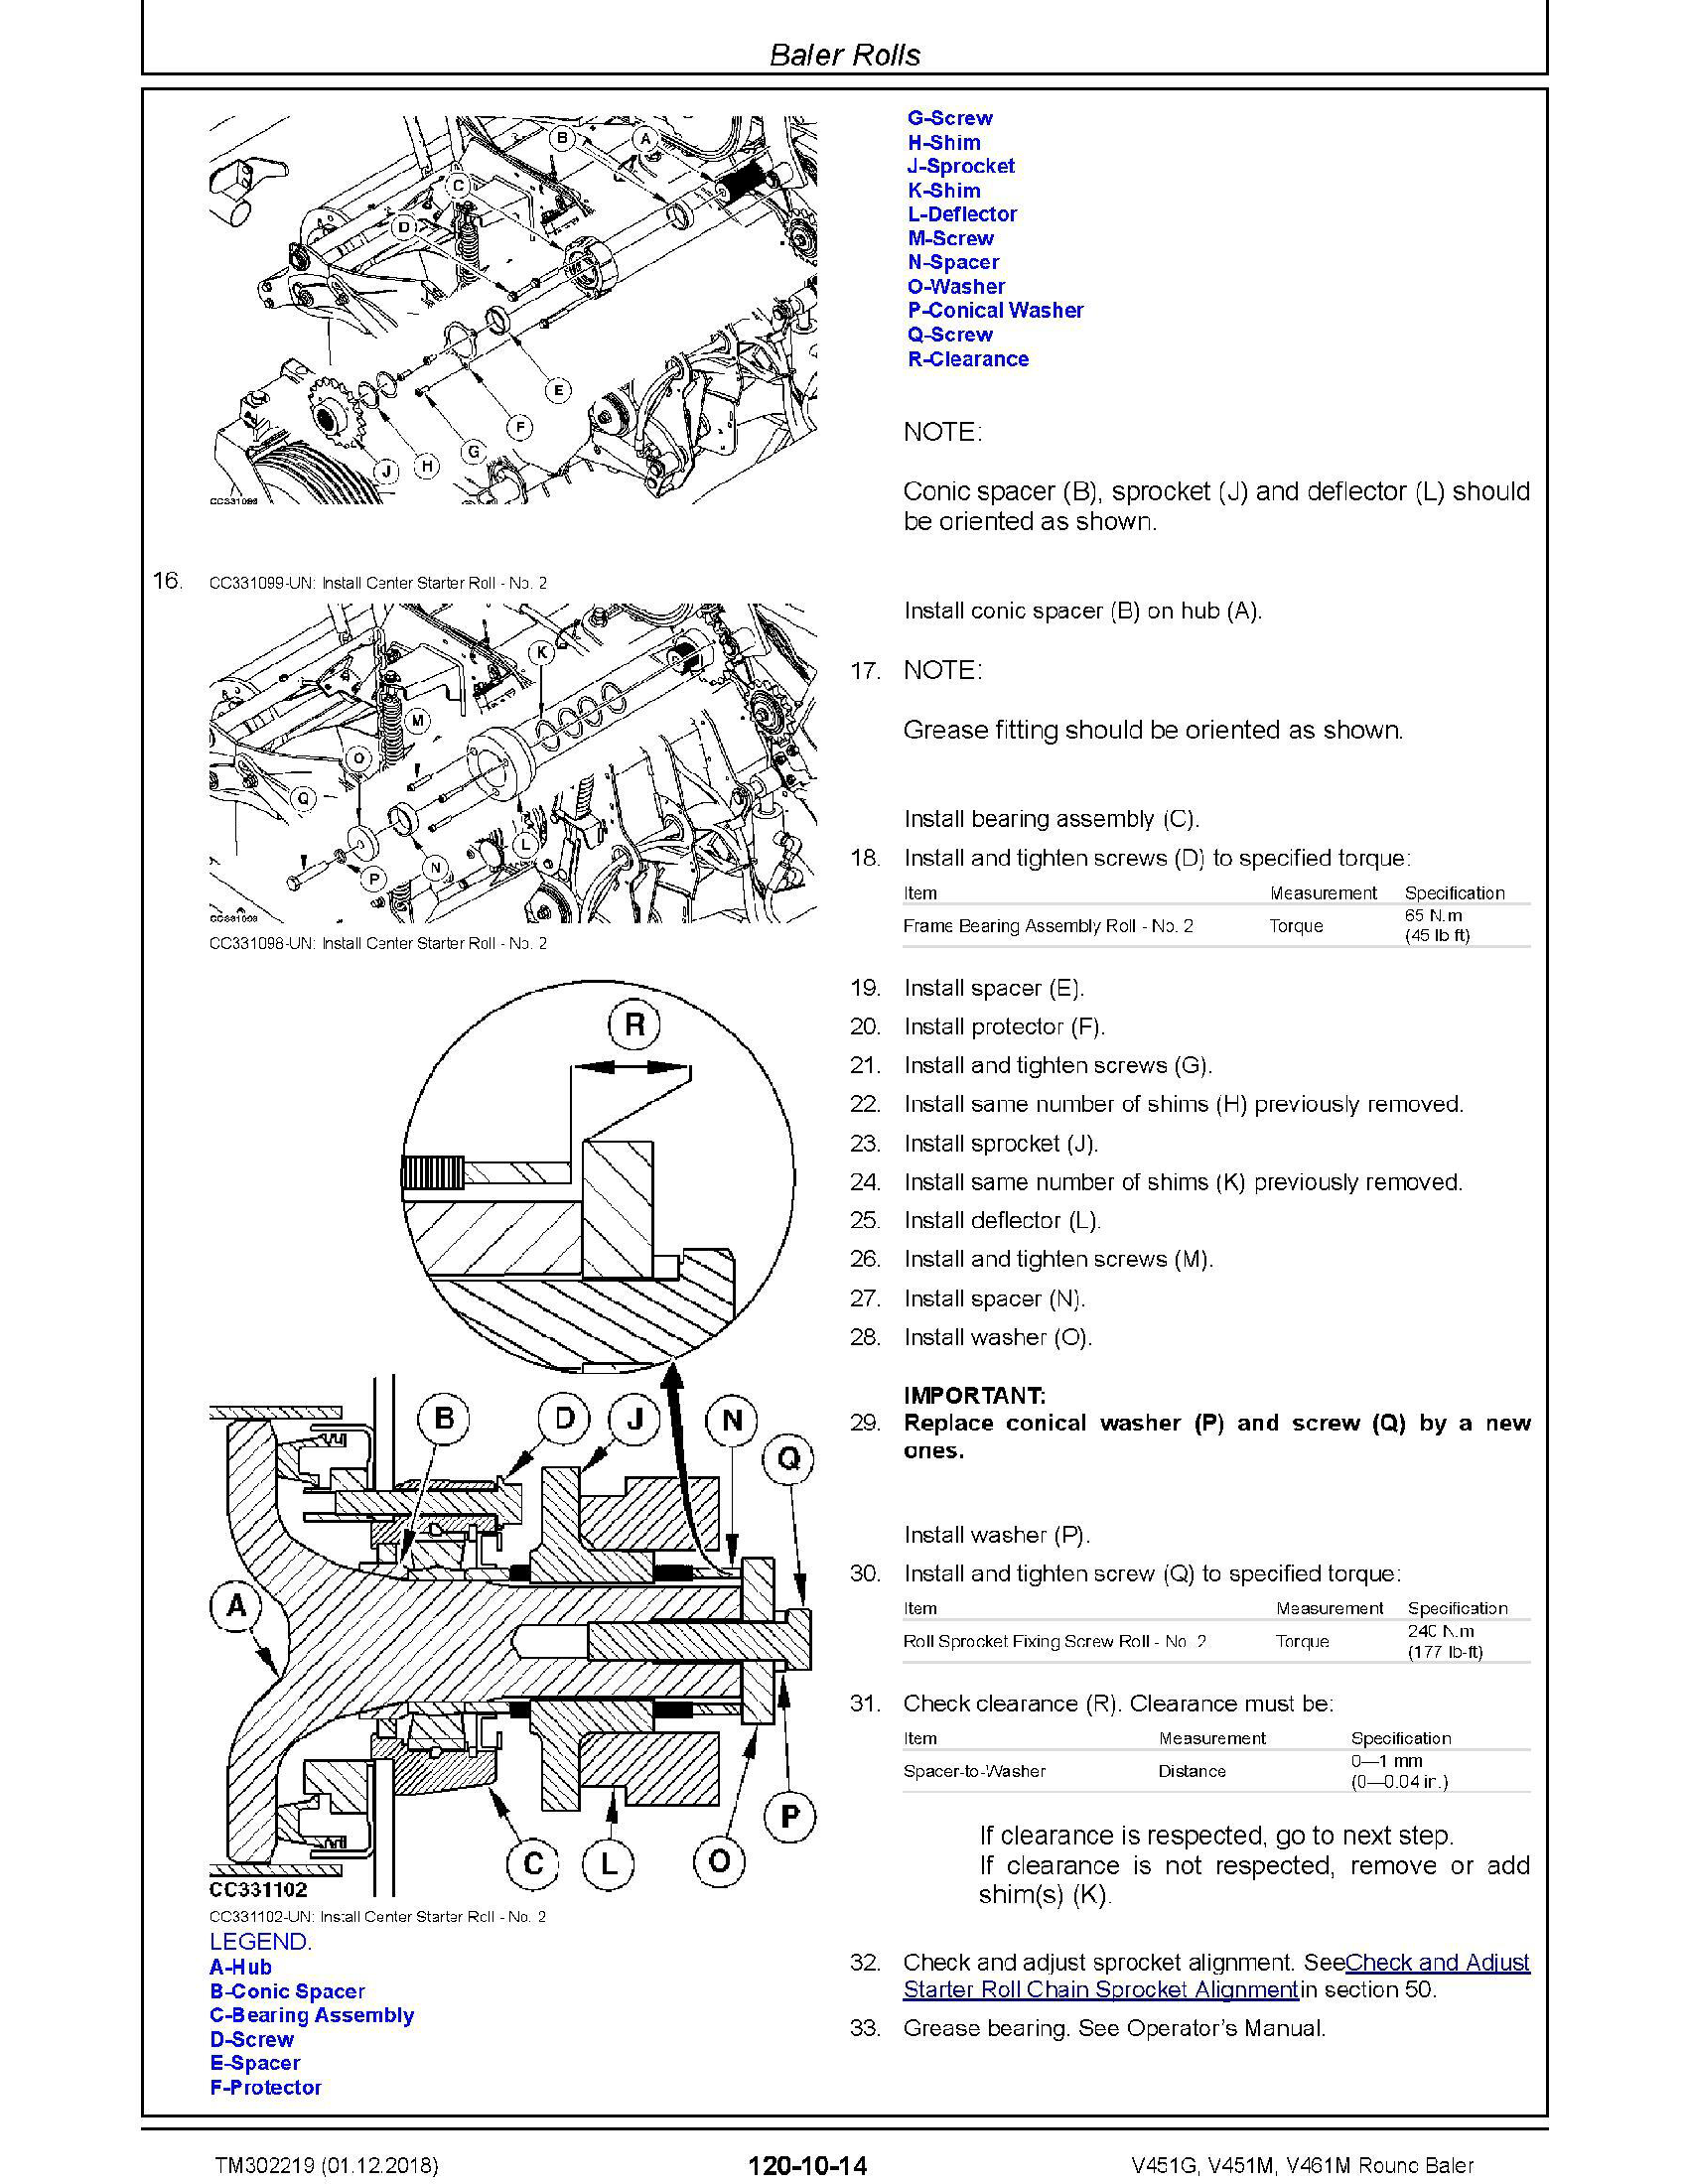 John Deere 724K manual pdf